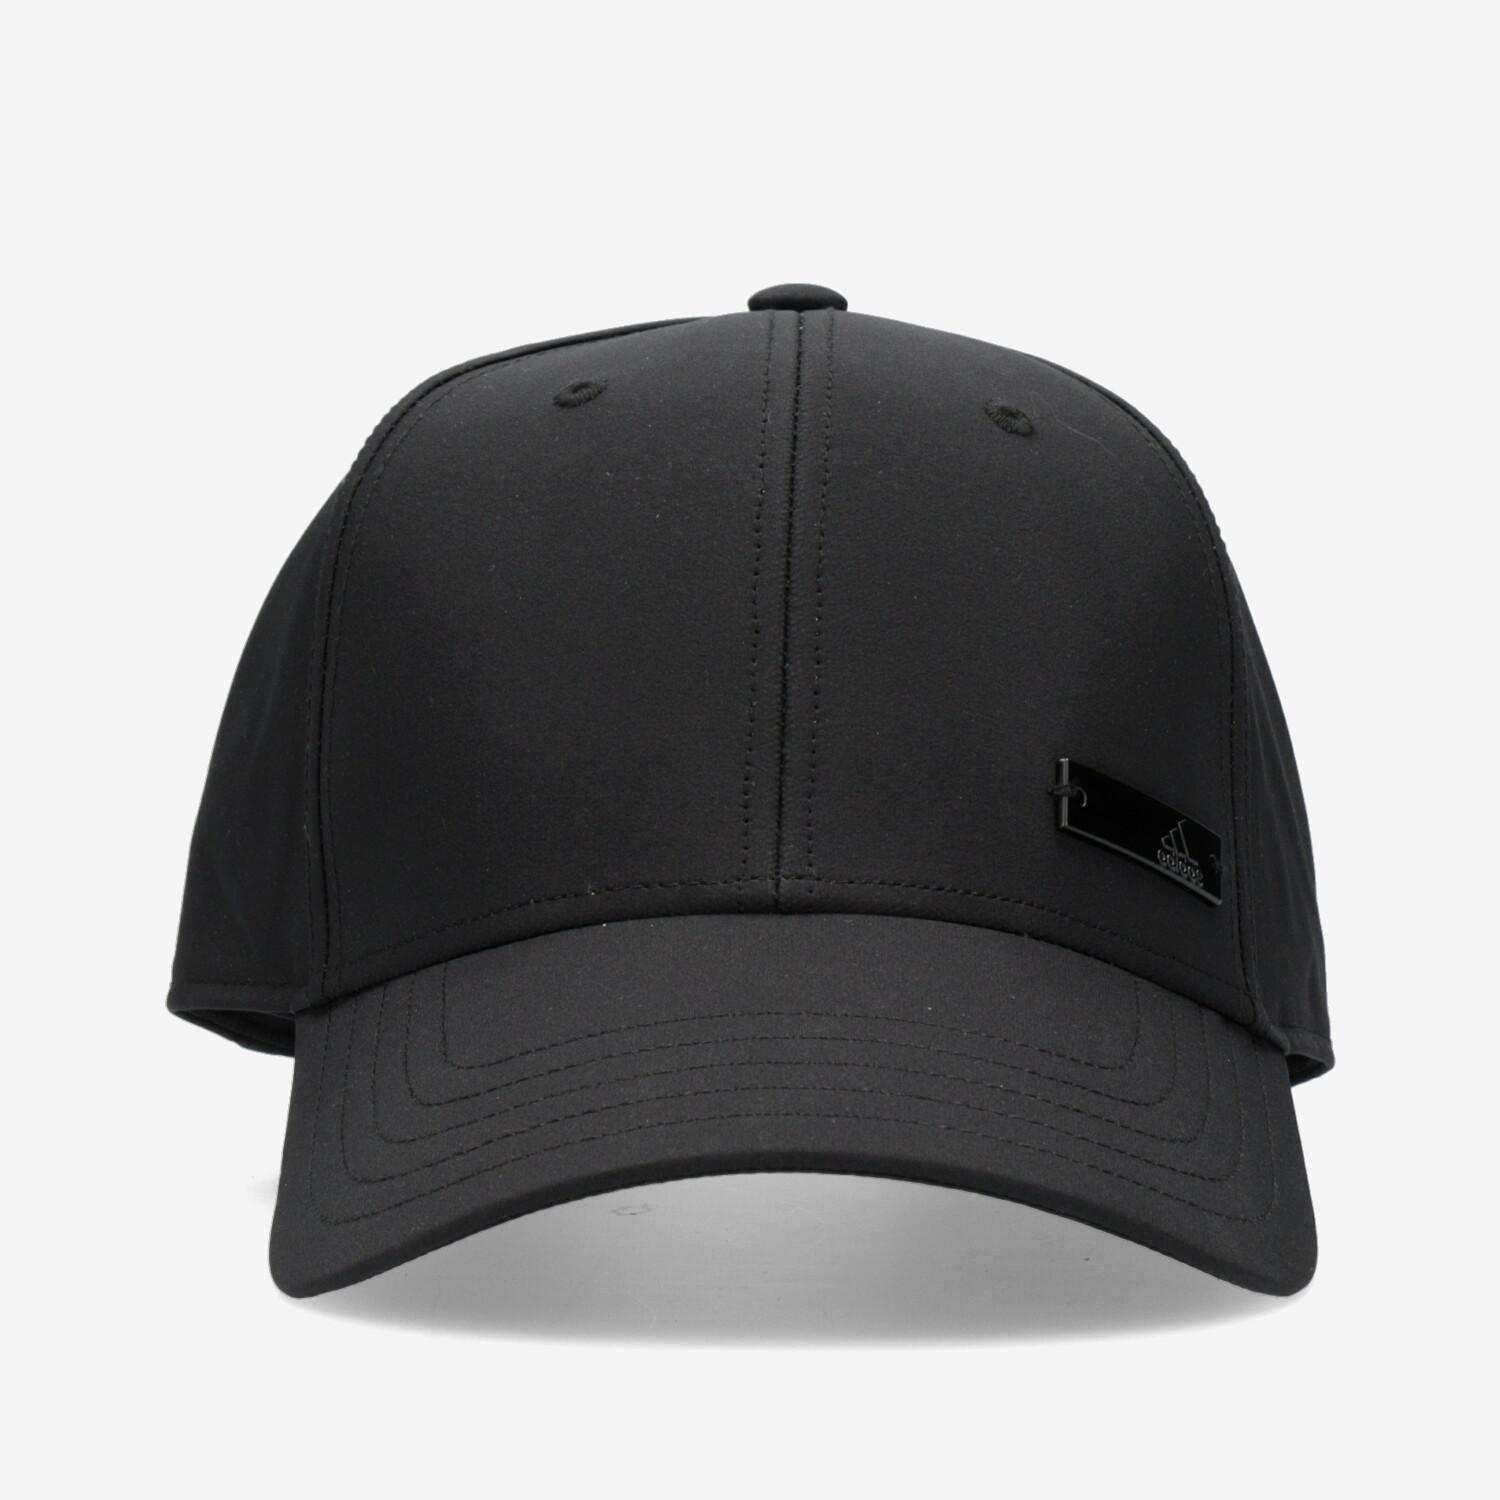 Gorra de adidas negra |